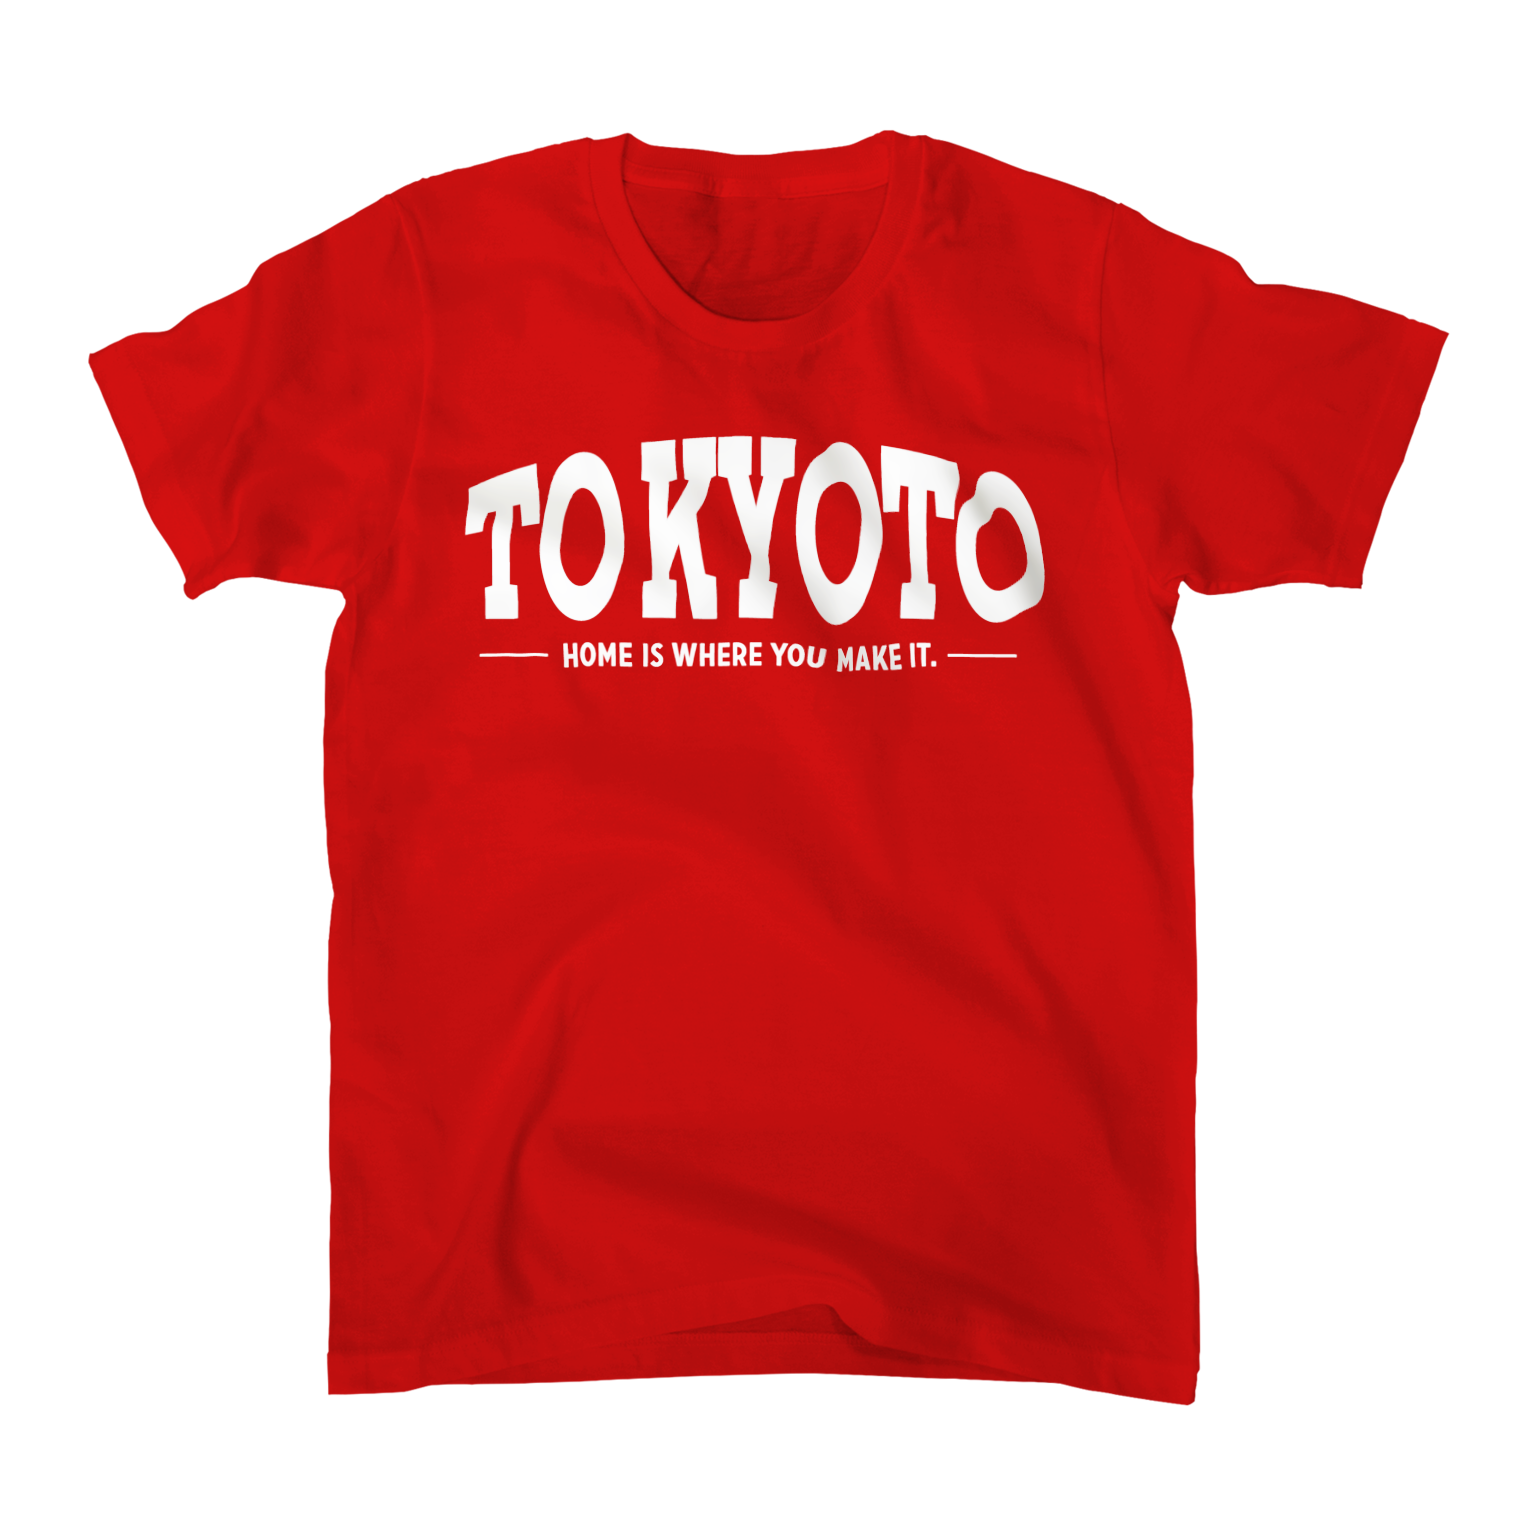 TOKYOTO to KYOTO T-shirt